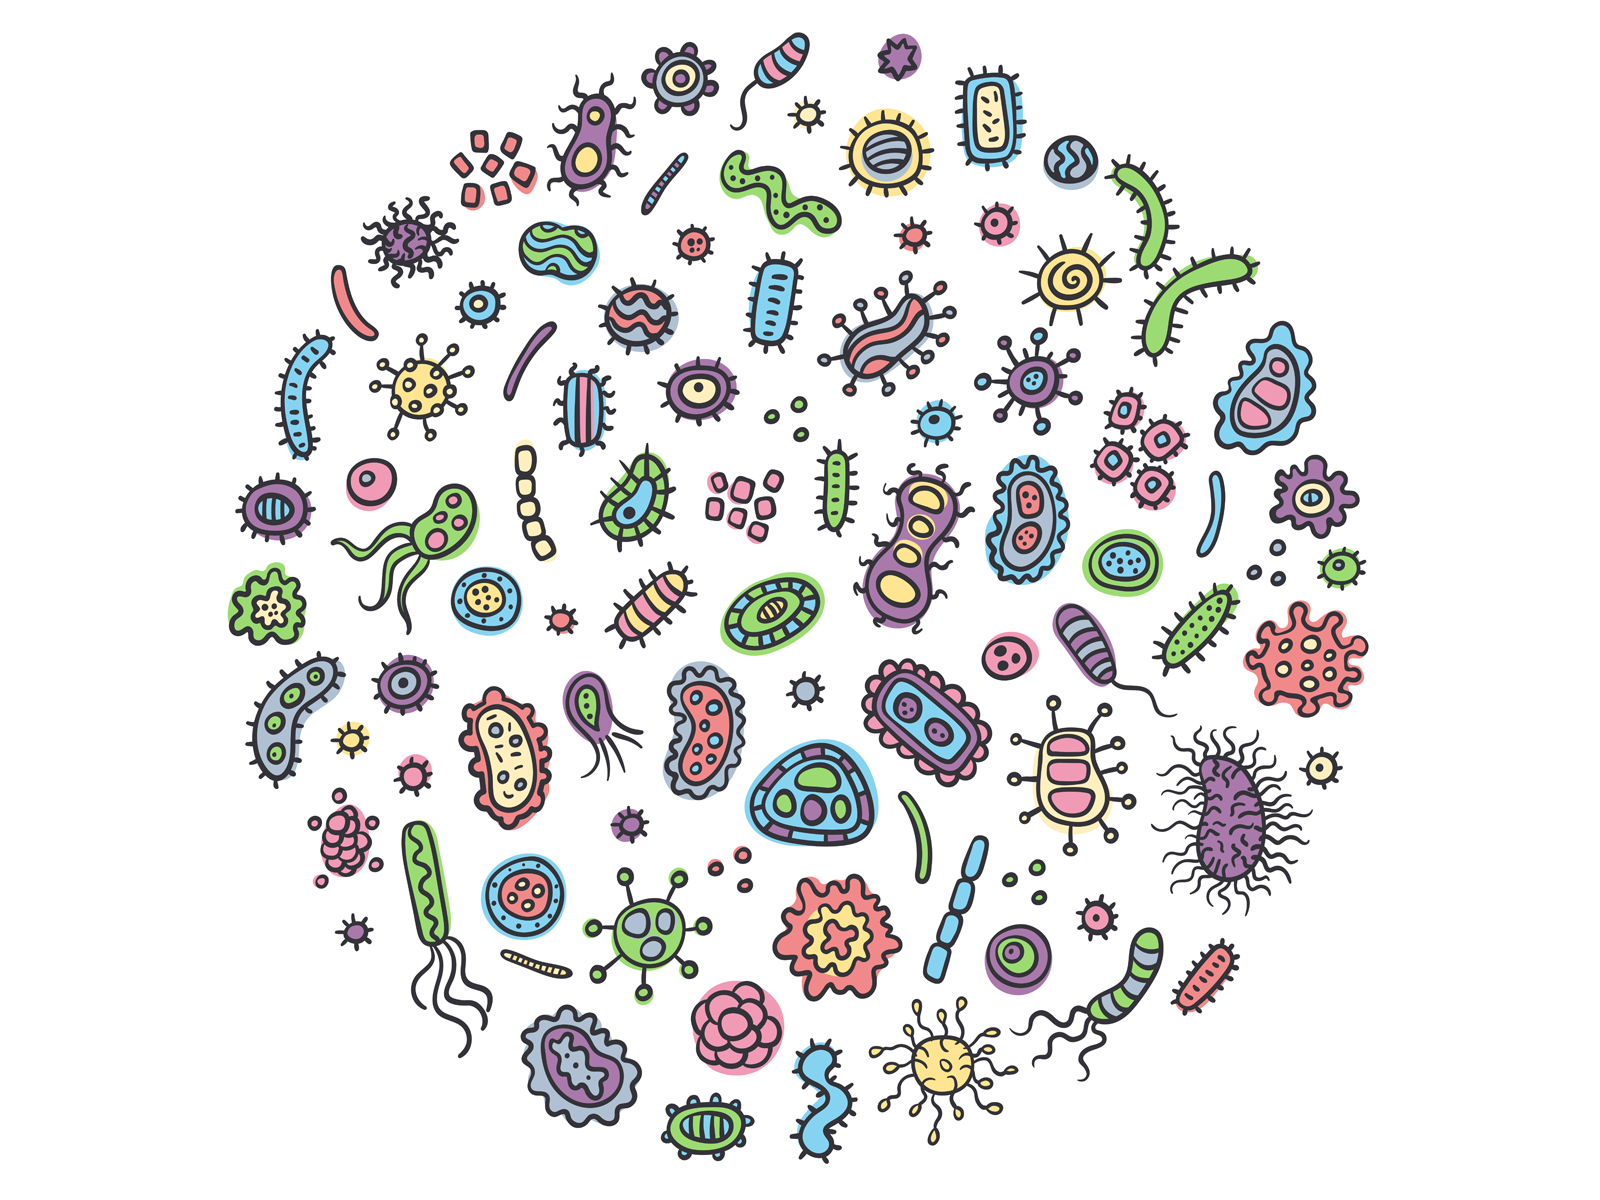 Примитивные организмы бактерии и вирусы